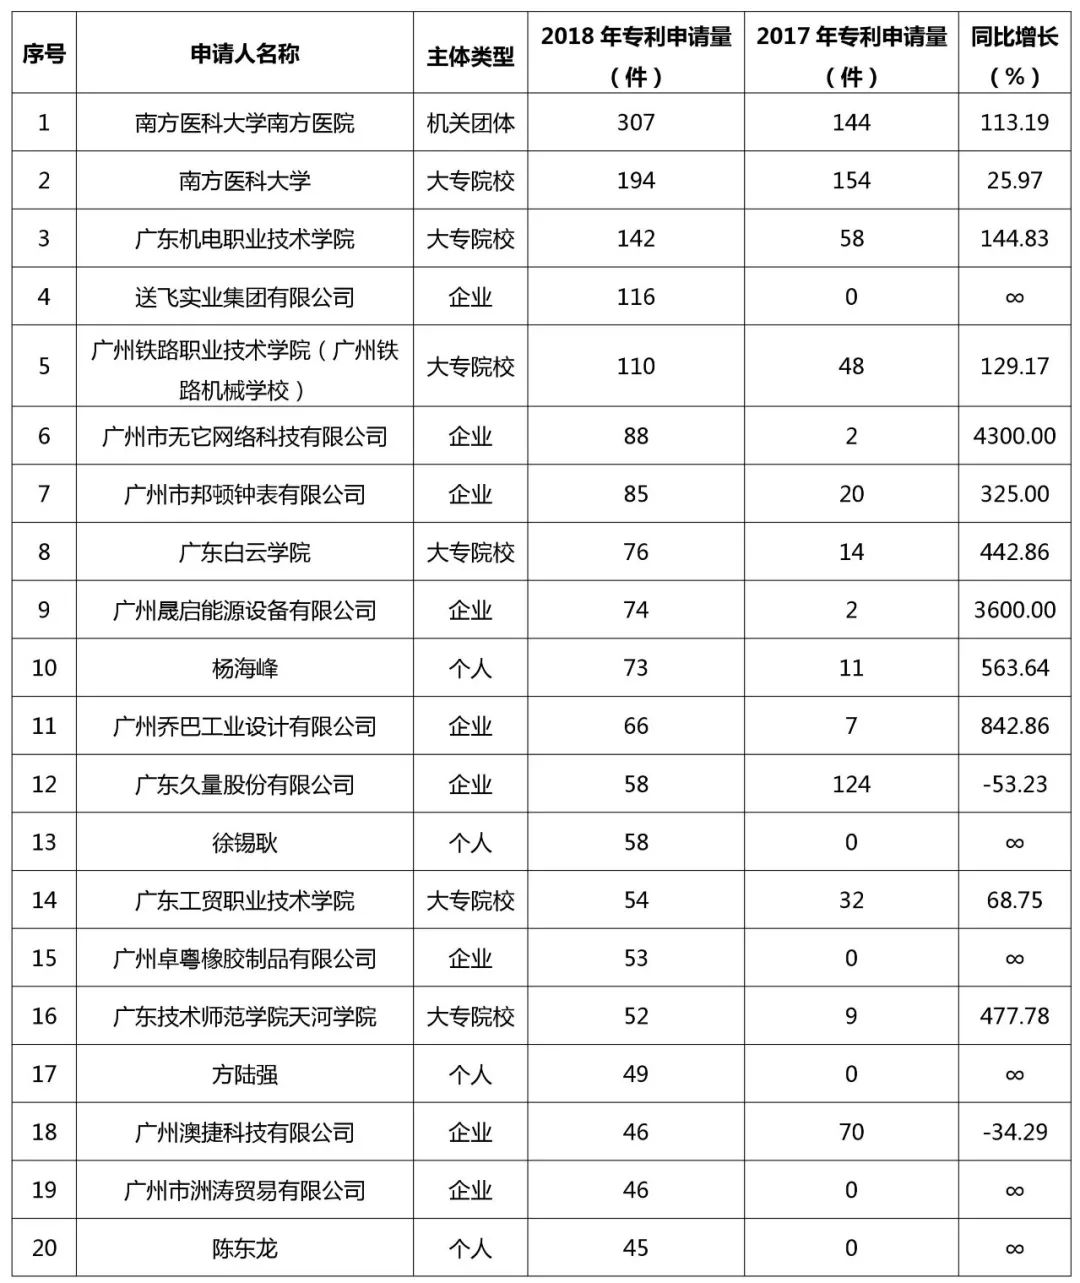 广州市白云区2018年全年专利数据分析